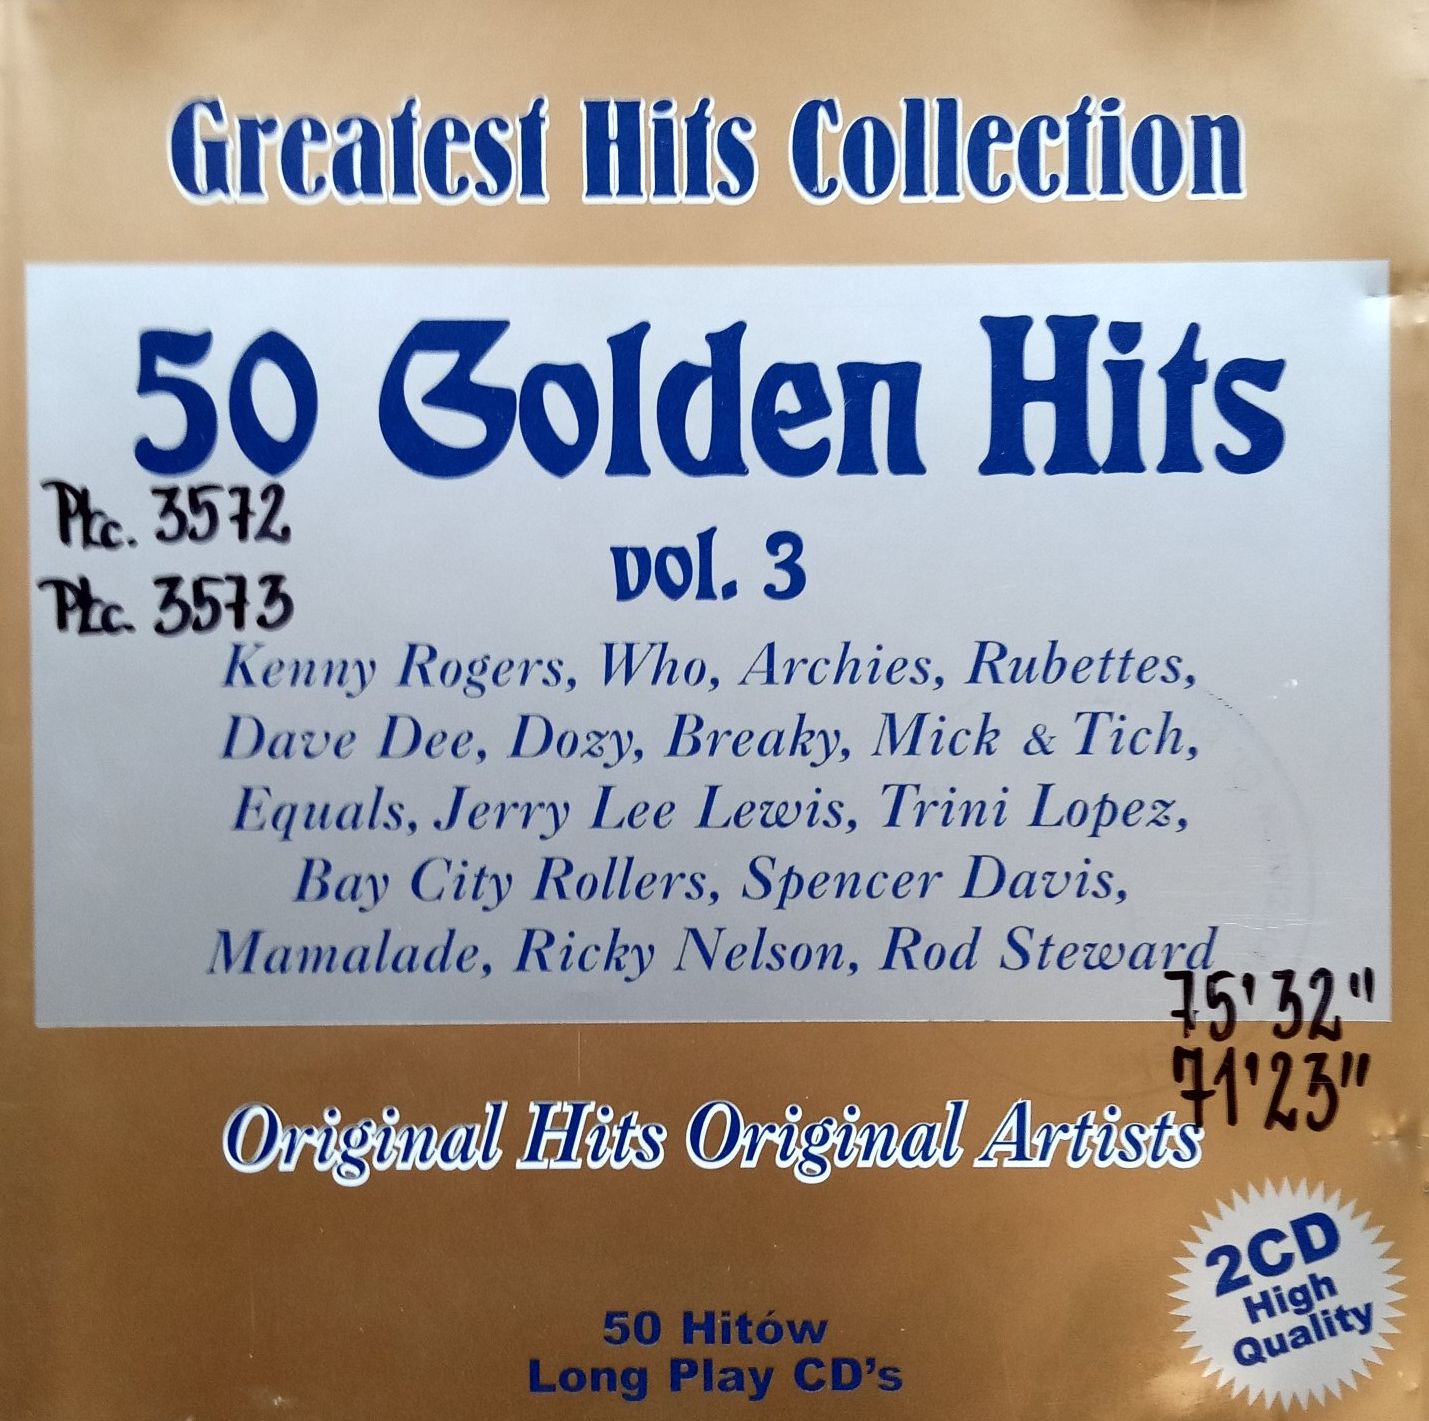 50 Golden Hits Vol. 3